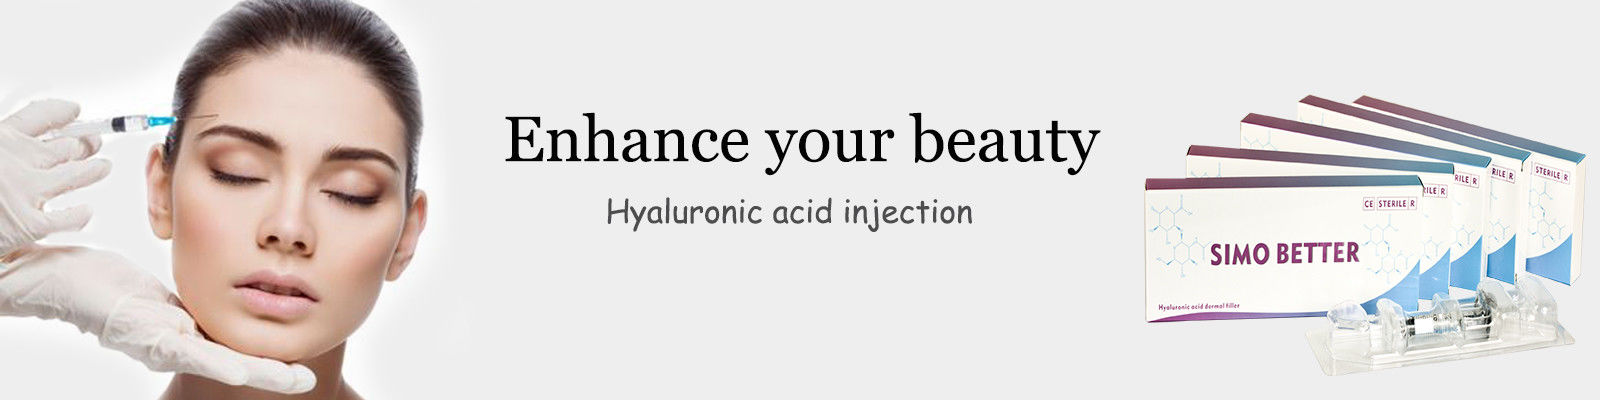 Injeção do ácido hialurónico